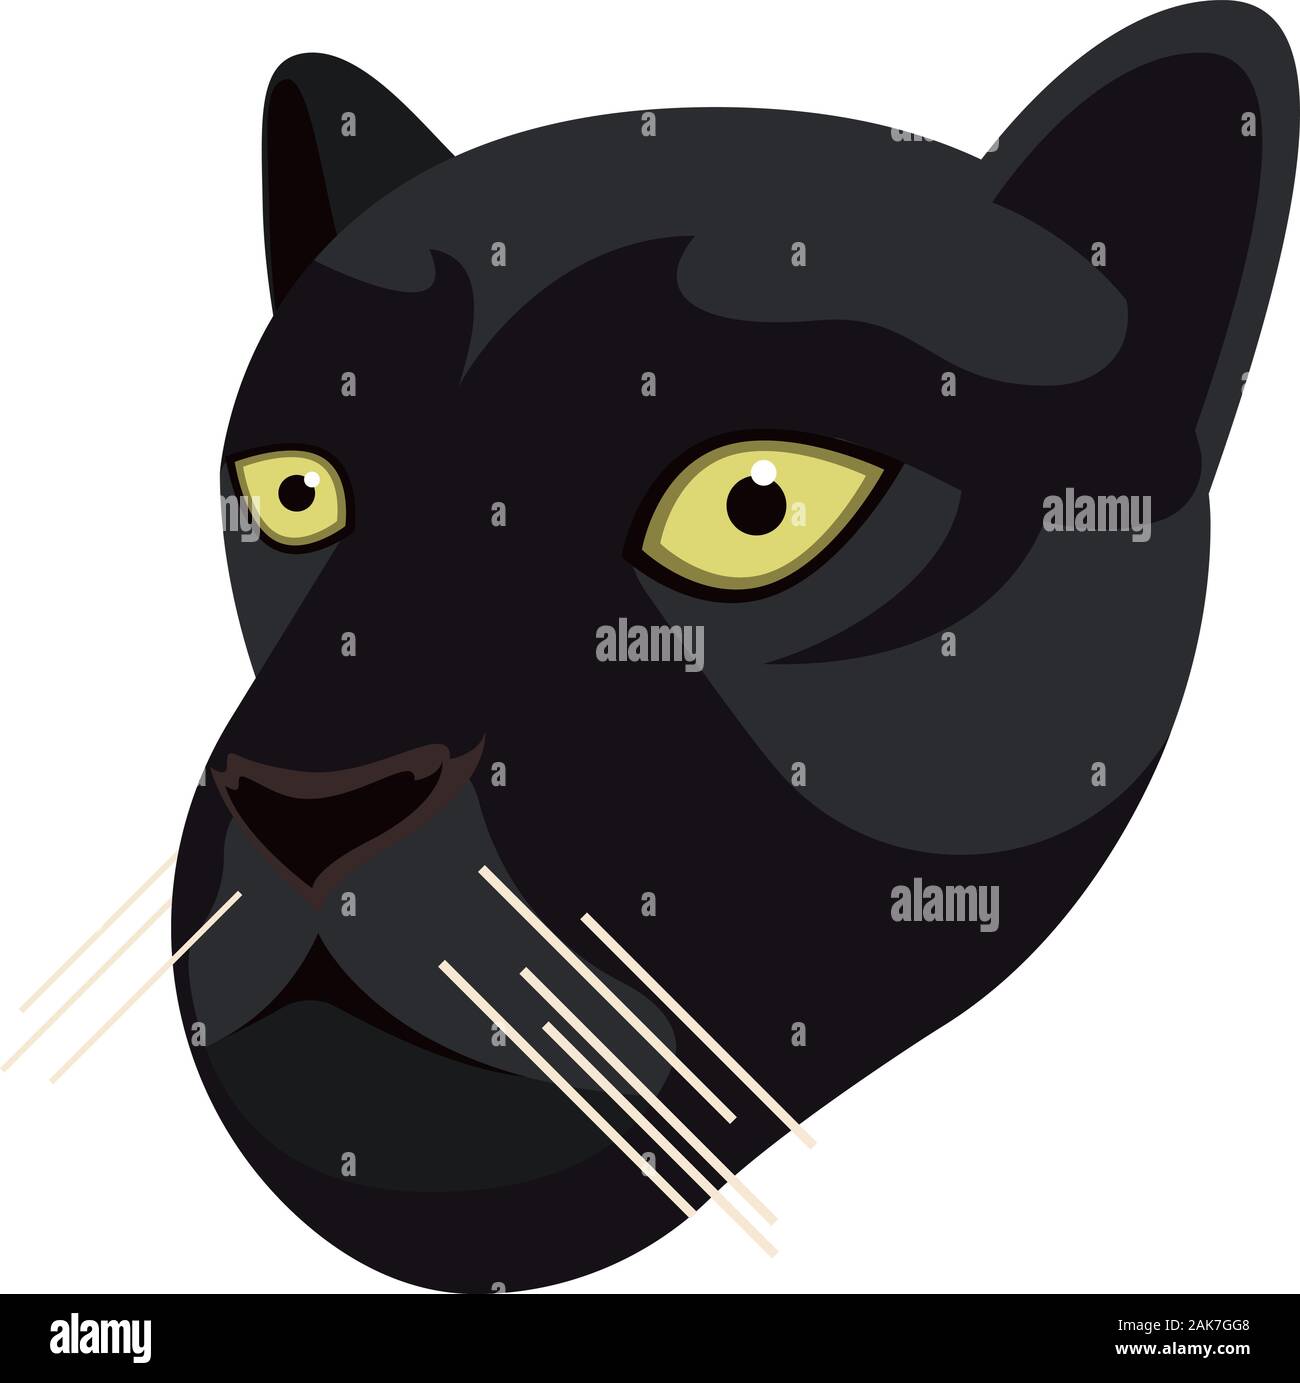 Portrait des Black Panthers, réalisés dans un style unique simple caricature. Chef de Vector black leopard ou jaguar. Icône isolé pour votre conception. Vector illustration Illustration de Vecteur